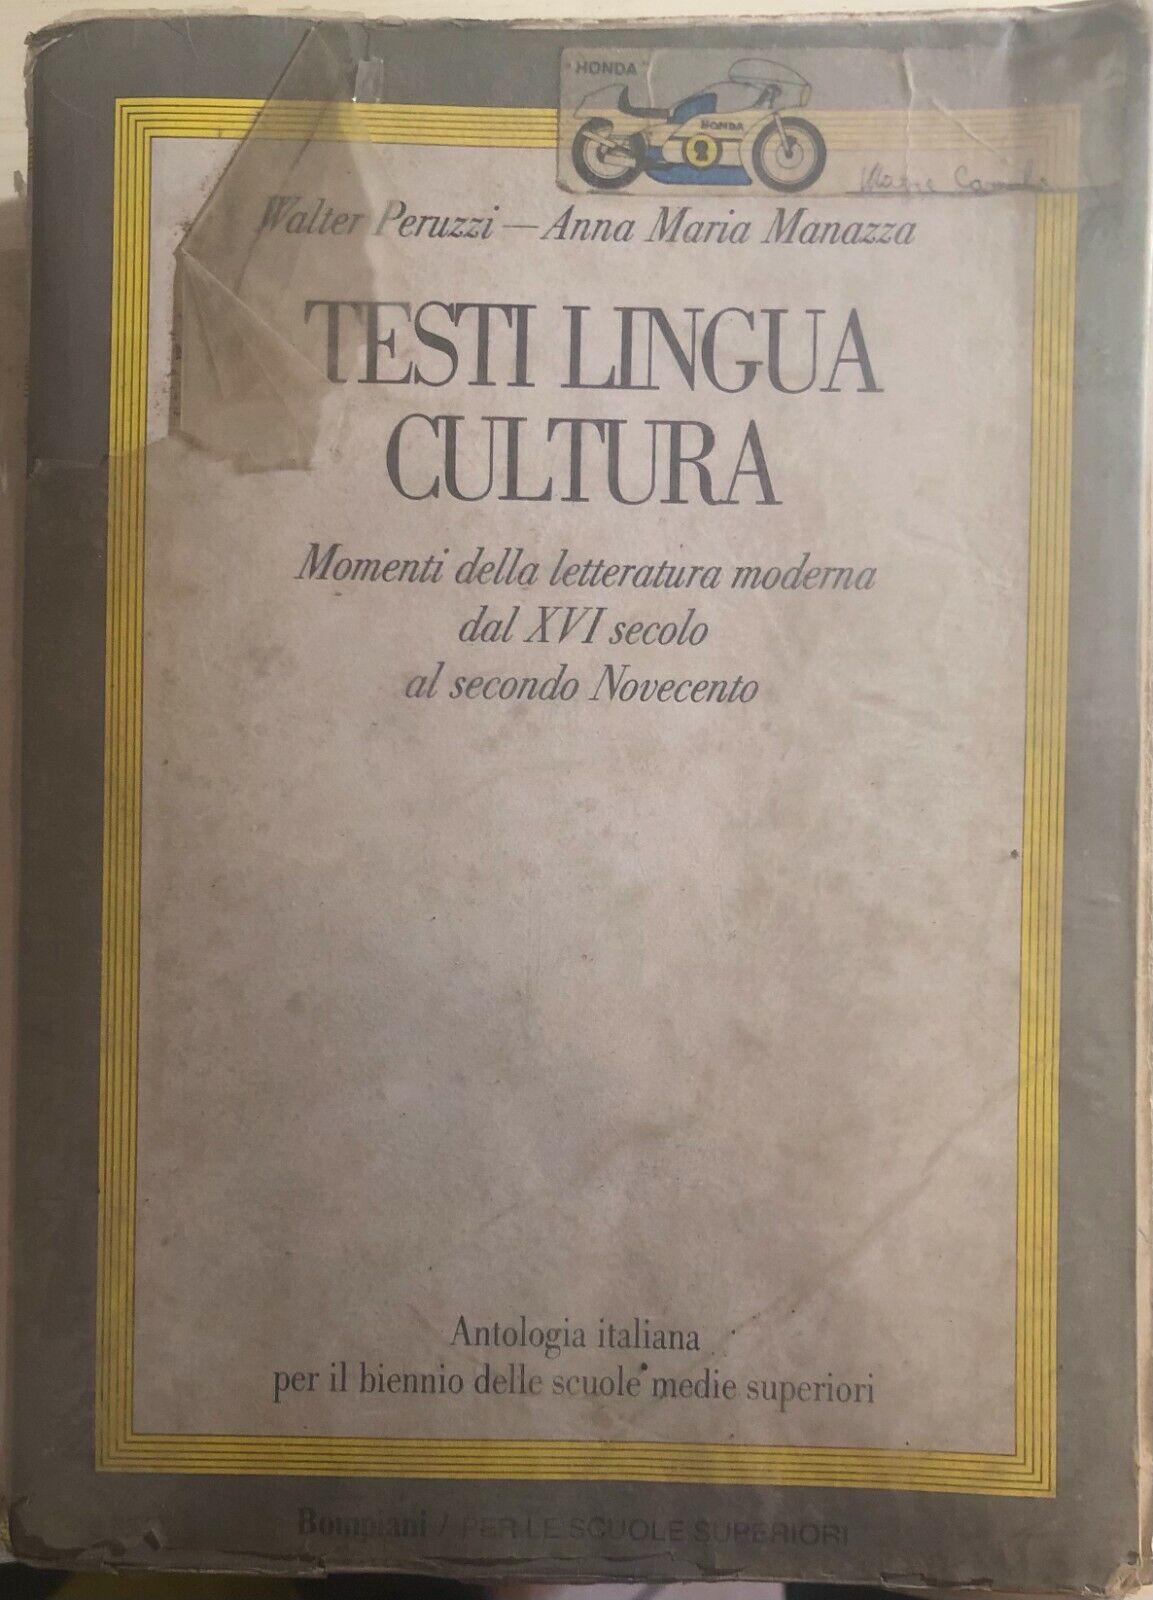 Testi lingua cultura di Peruzzi-manazza,  1987,  Bompiani